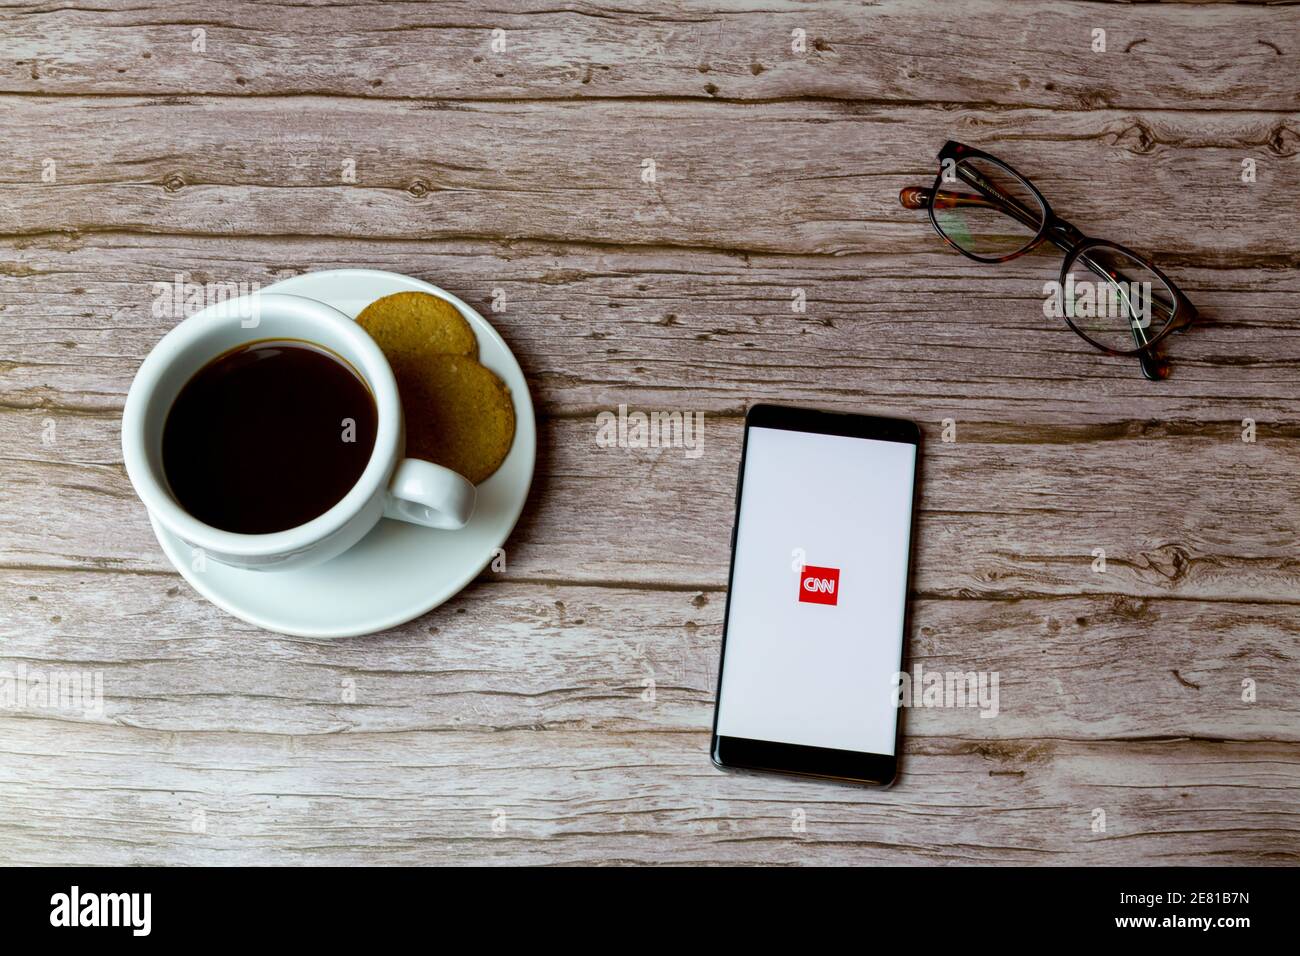 Ein Handy oder Handy auf einem Holz gelegt Tisch mit der CNN News App Eröffnung auch einen Kaffee Und Brille Stockfoto